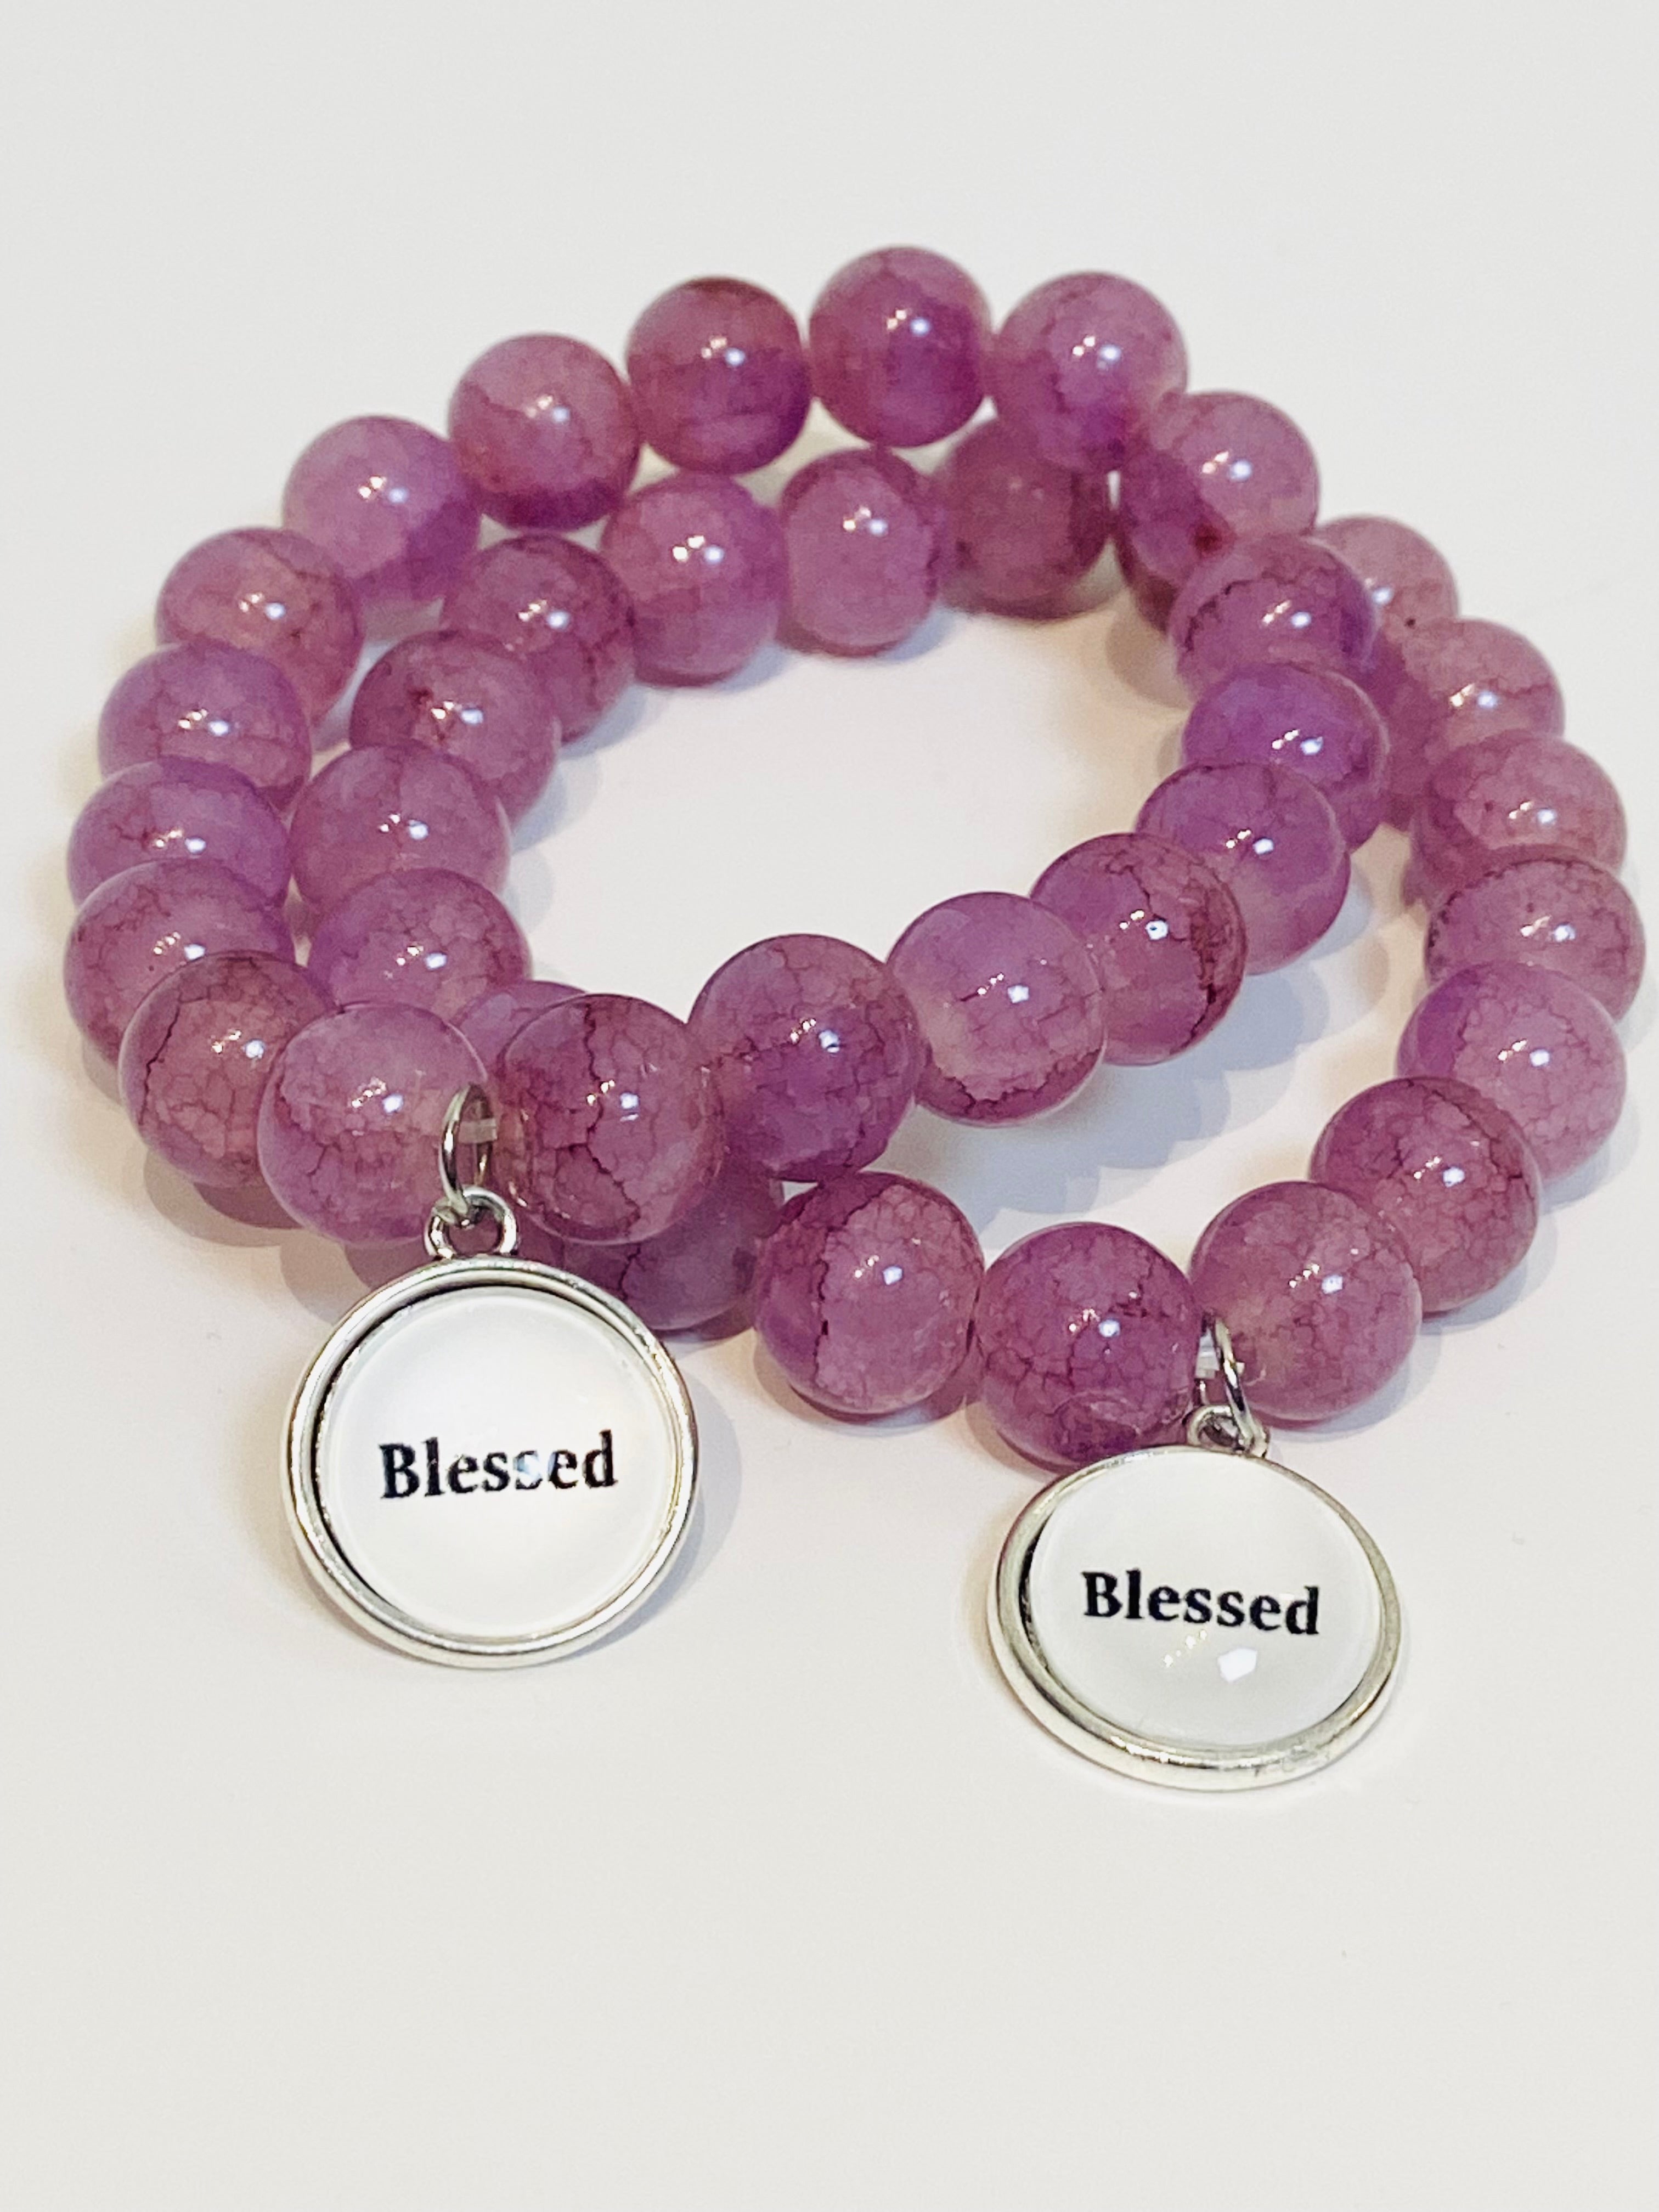 Purple beaded stretch bracelet with charm